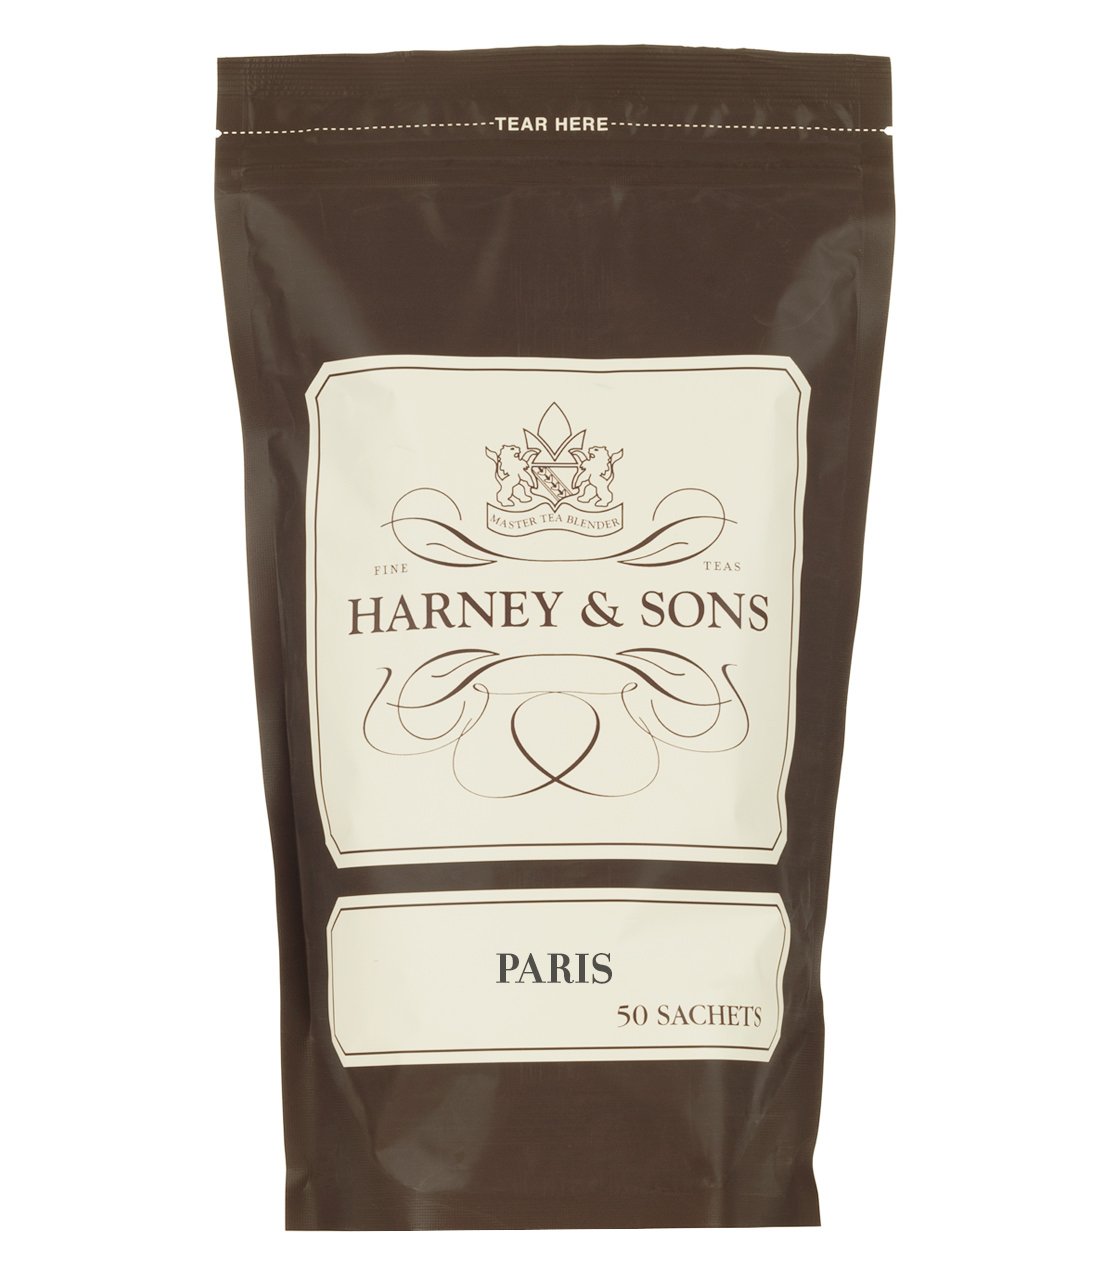 Paris - Harney & Sons Teas, European Distribution Center